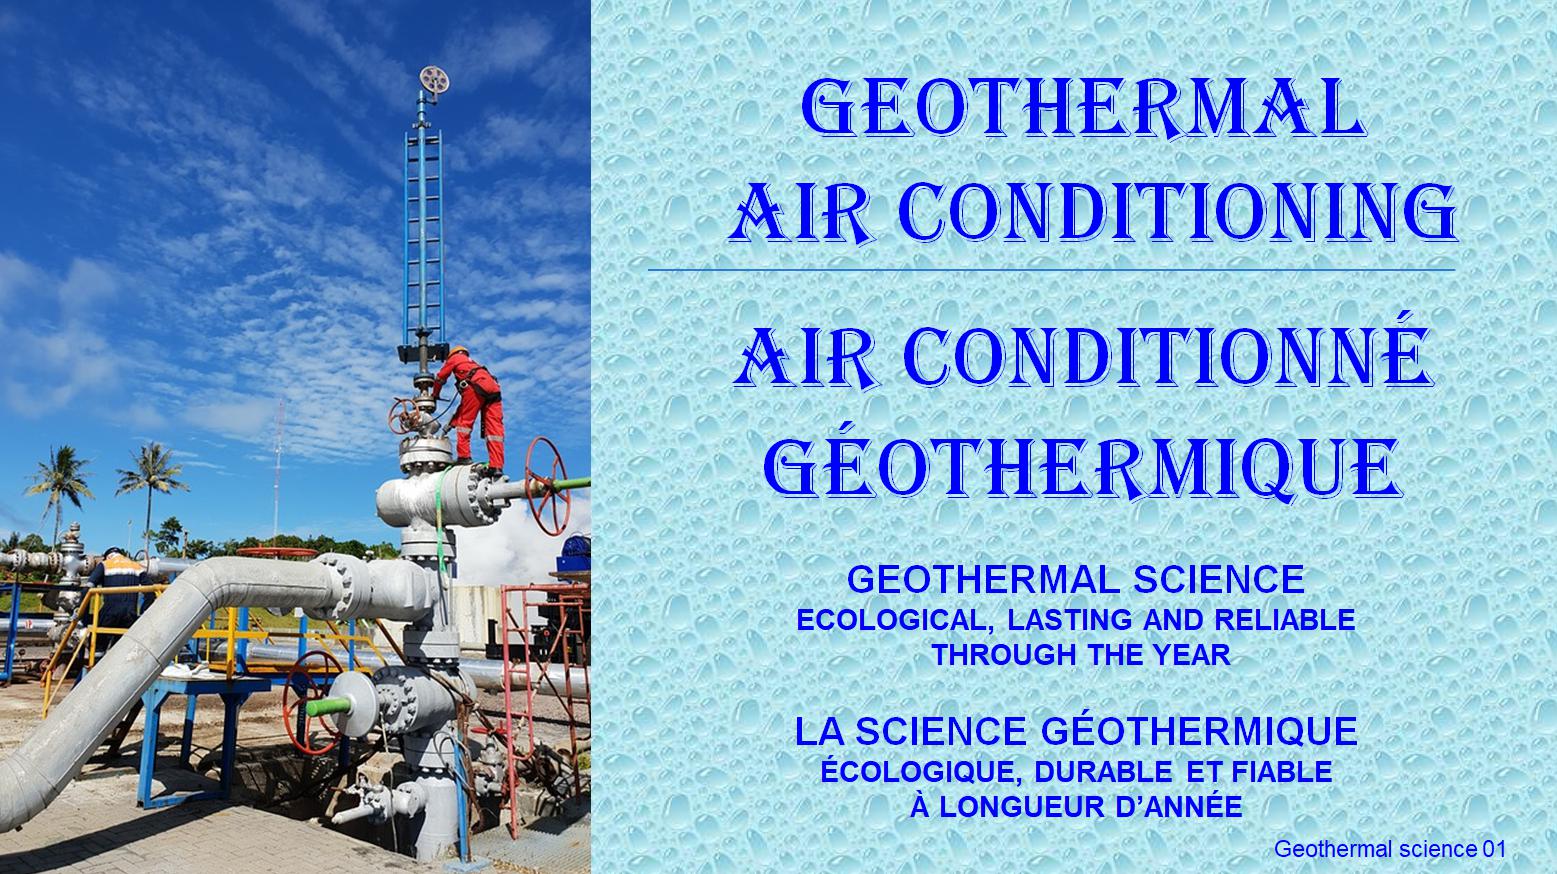 Geothermal science 01